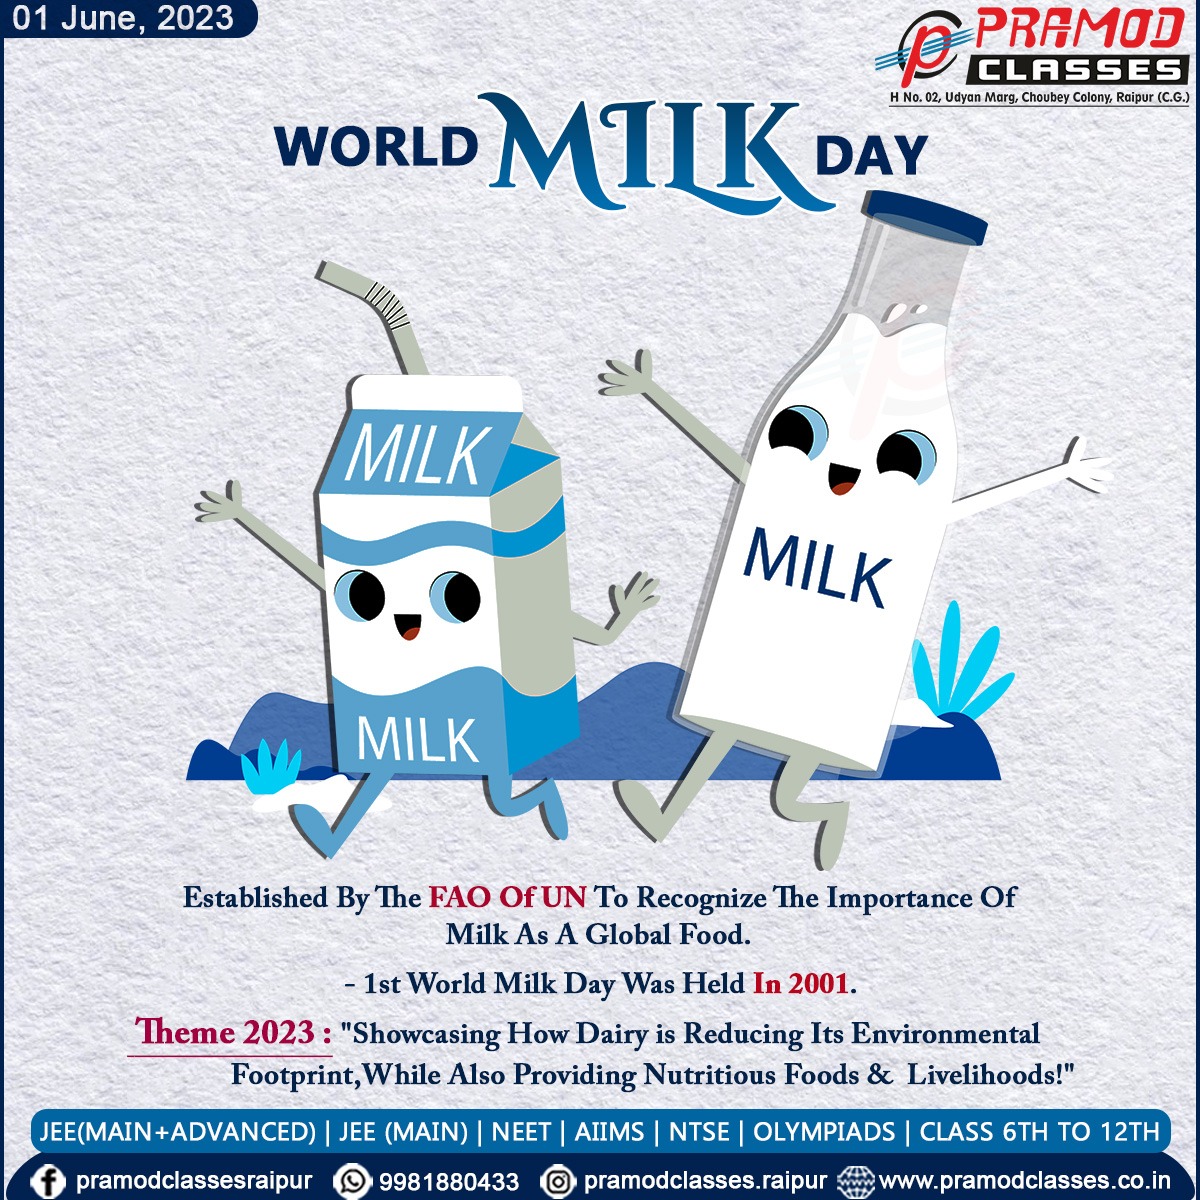 #Milk #MilkDay #MilkDay2023 #WorldMilkDay #WorldMilkDay2023